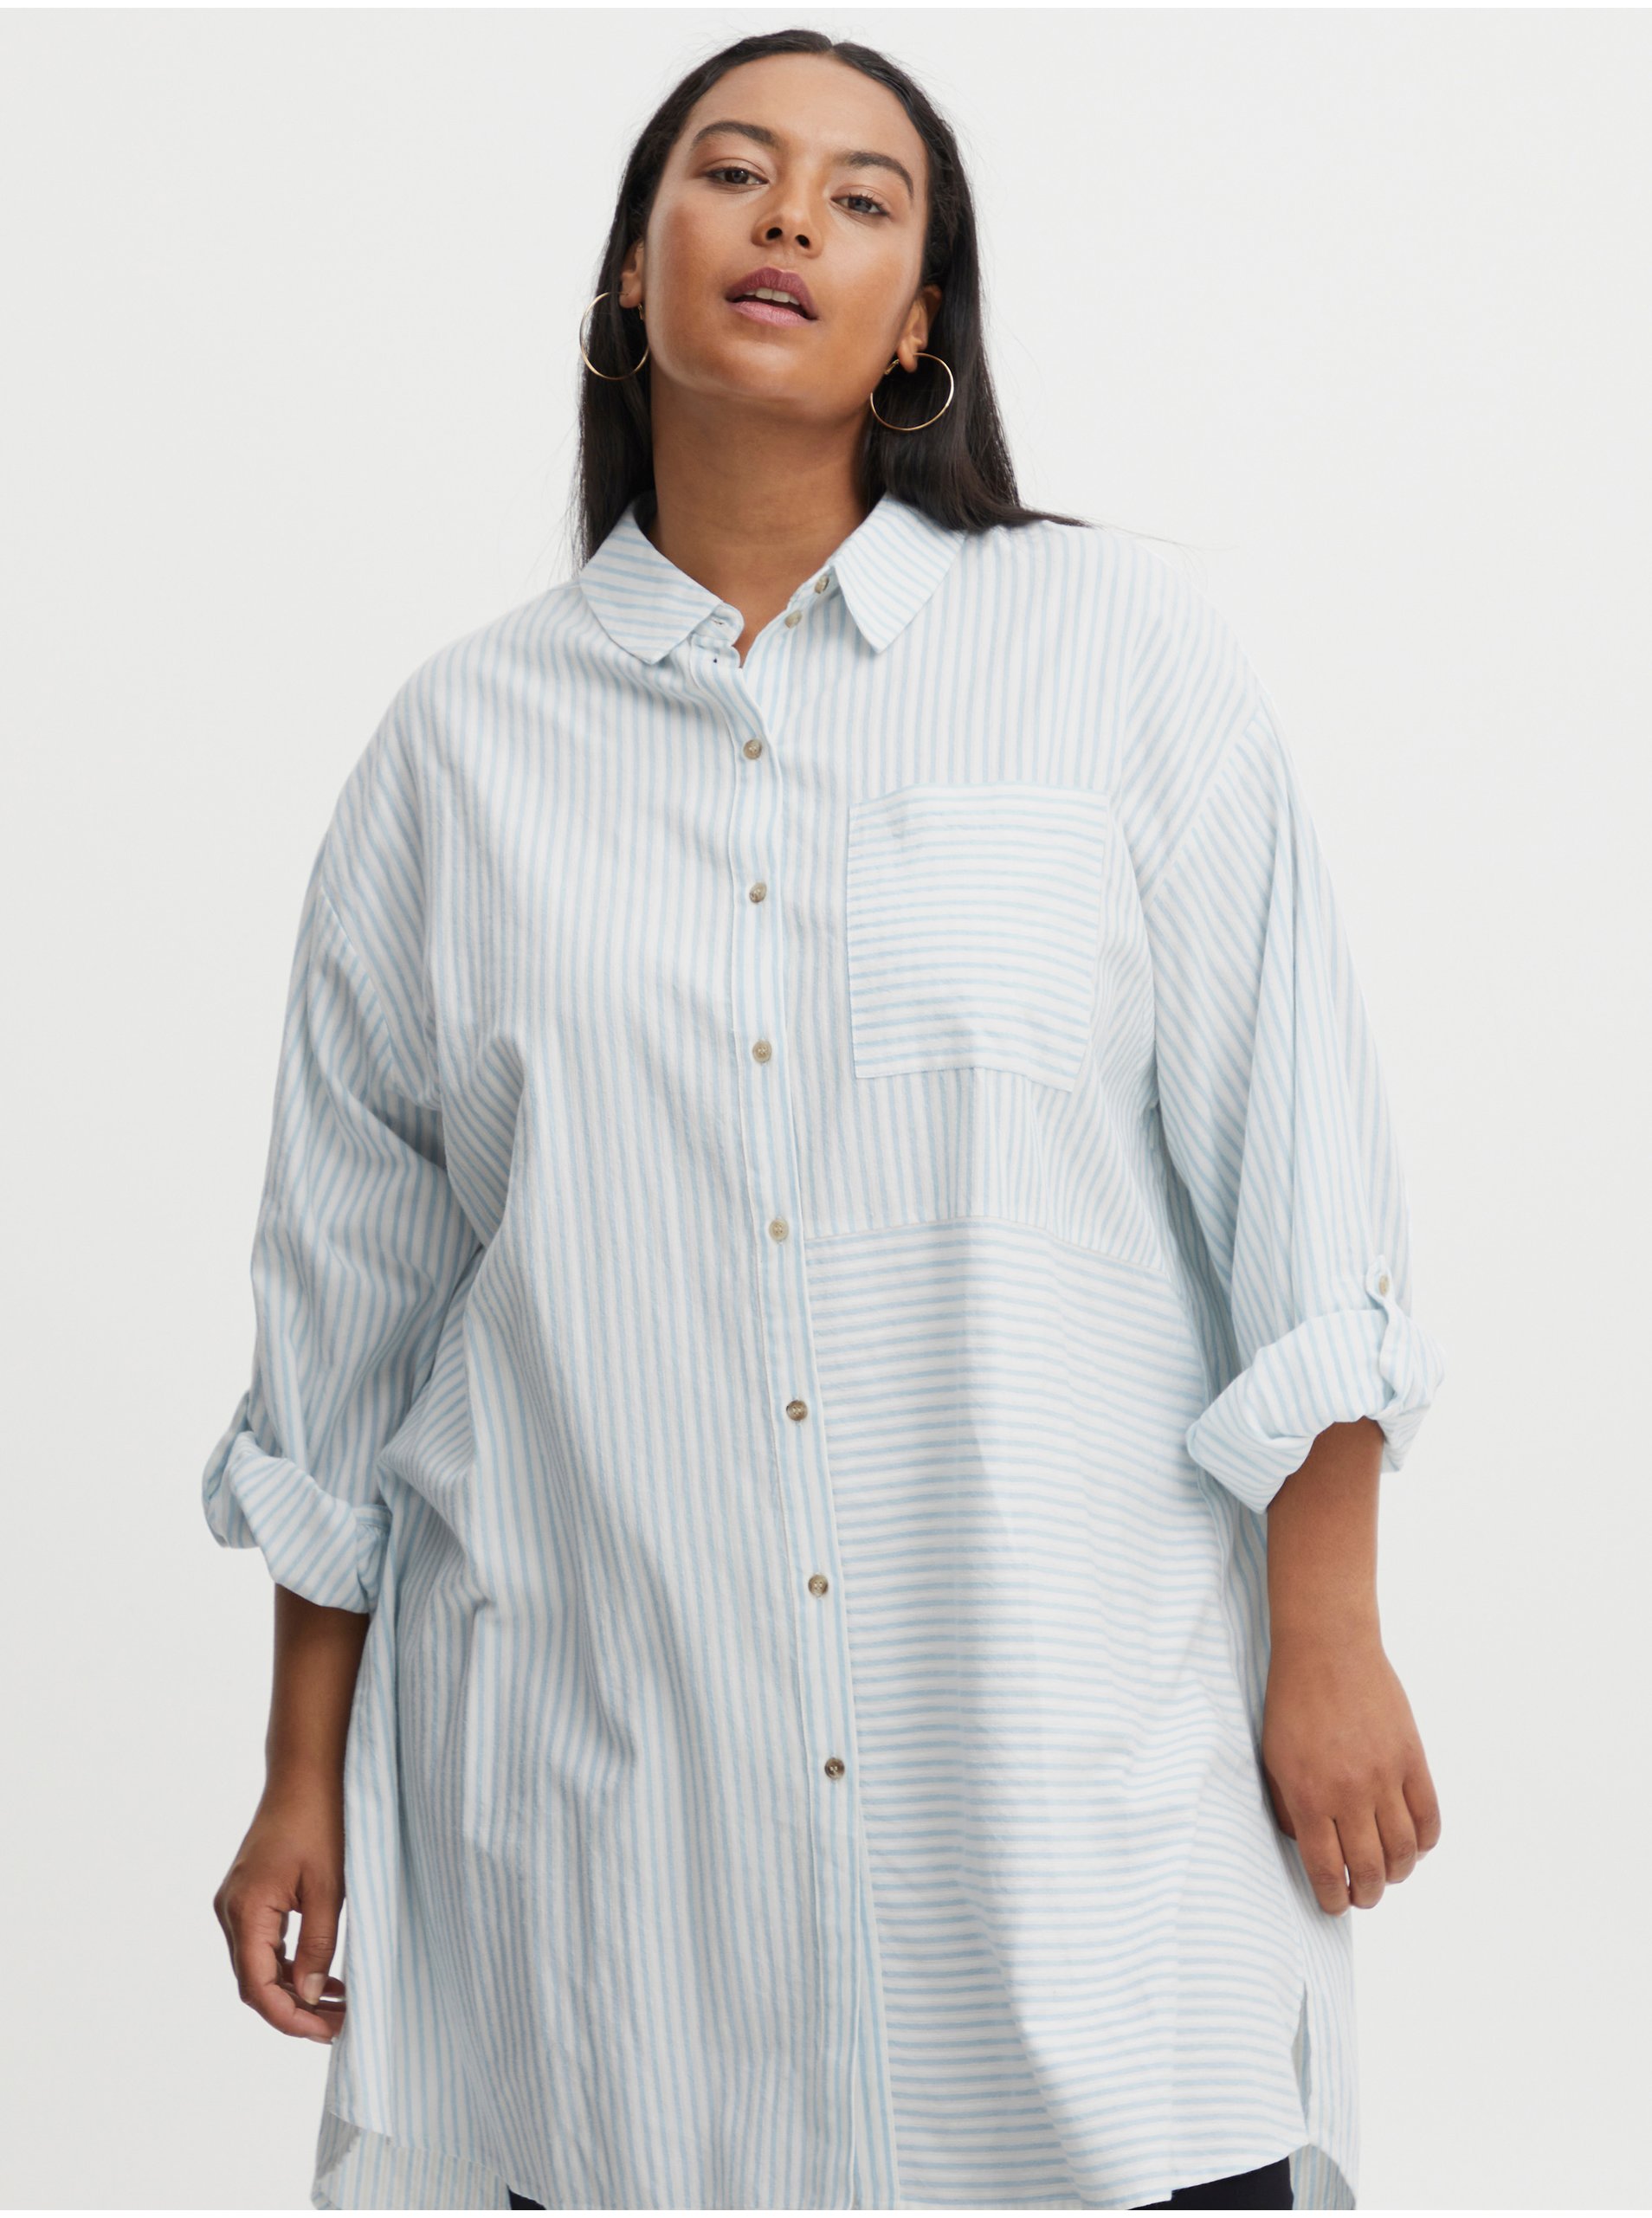 Lacno Modro-biela dámska pruhovaná košeľa Fransa